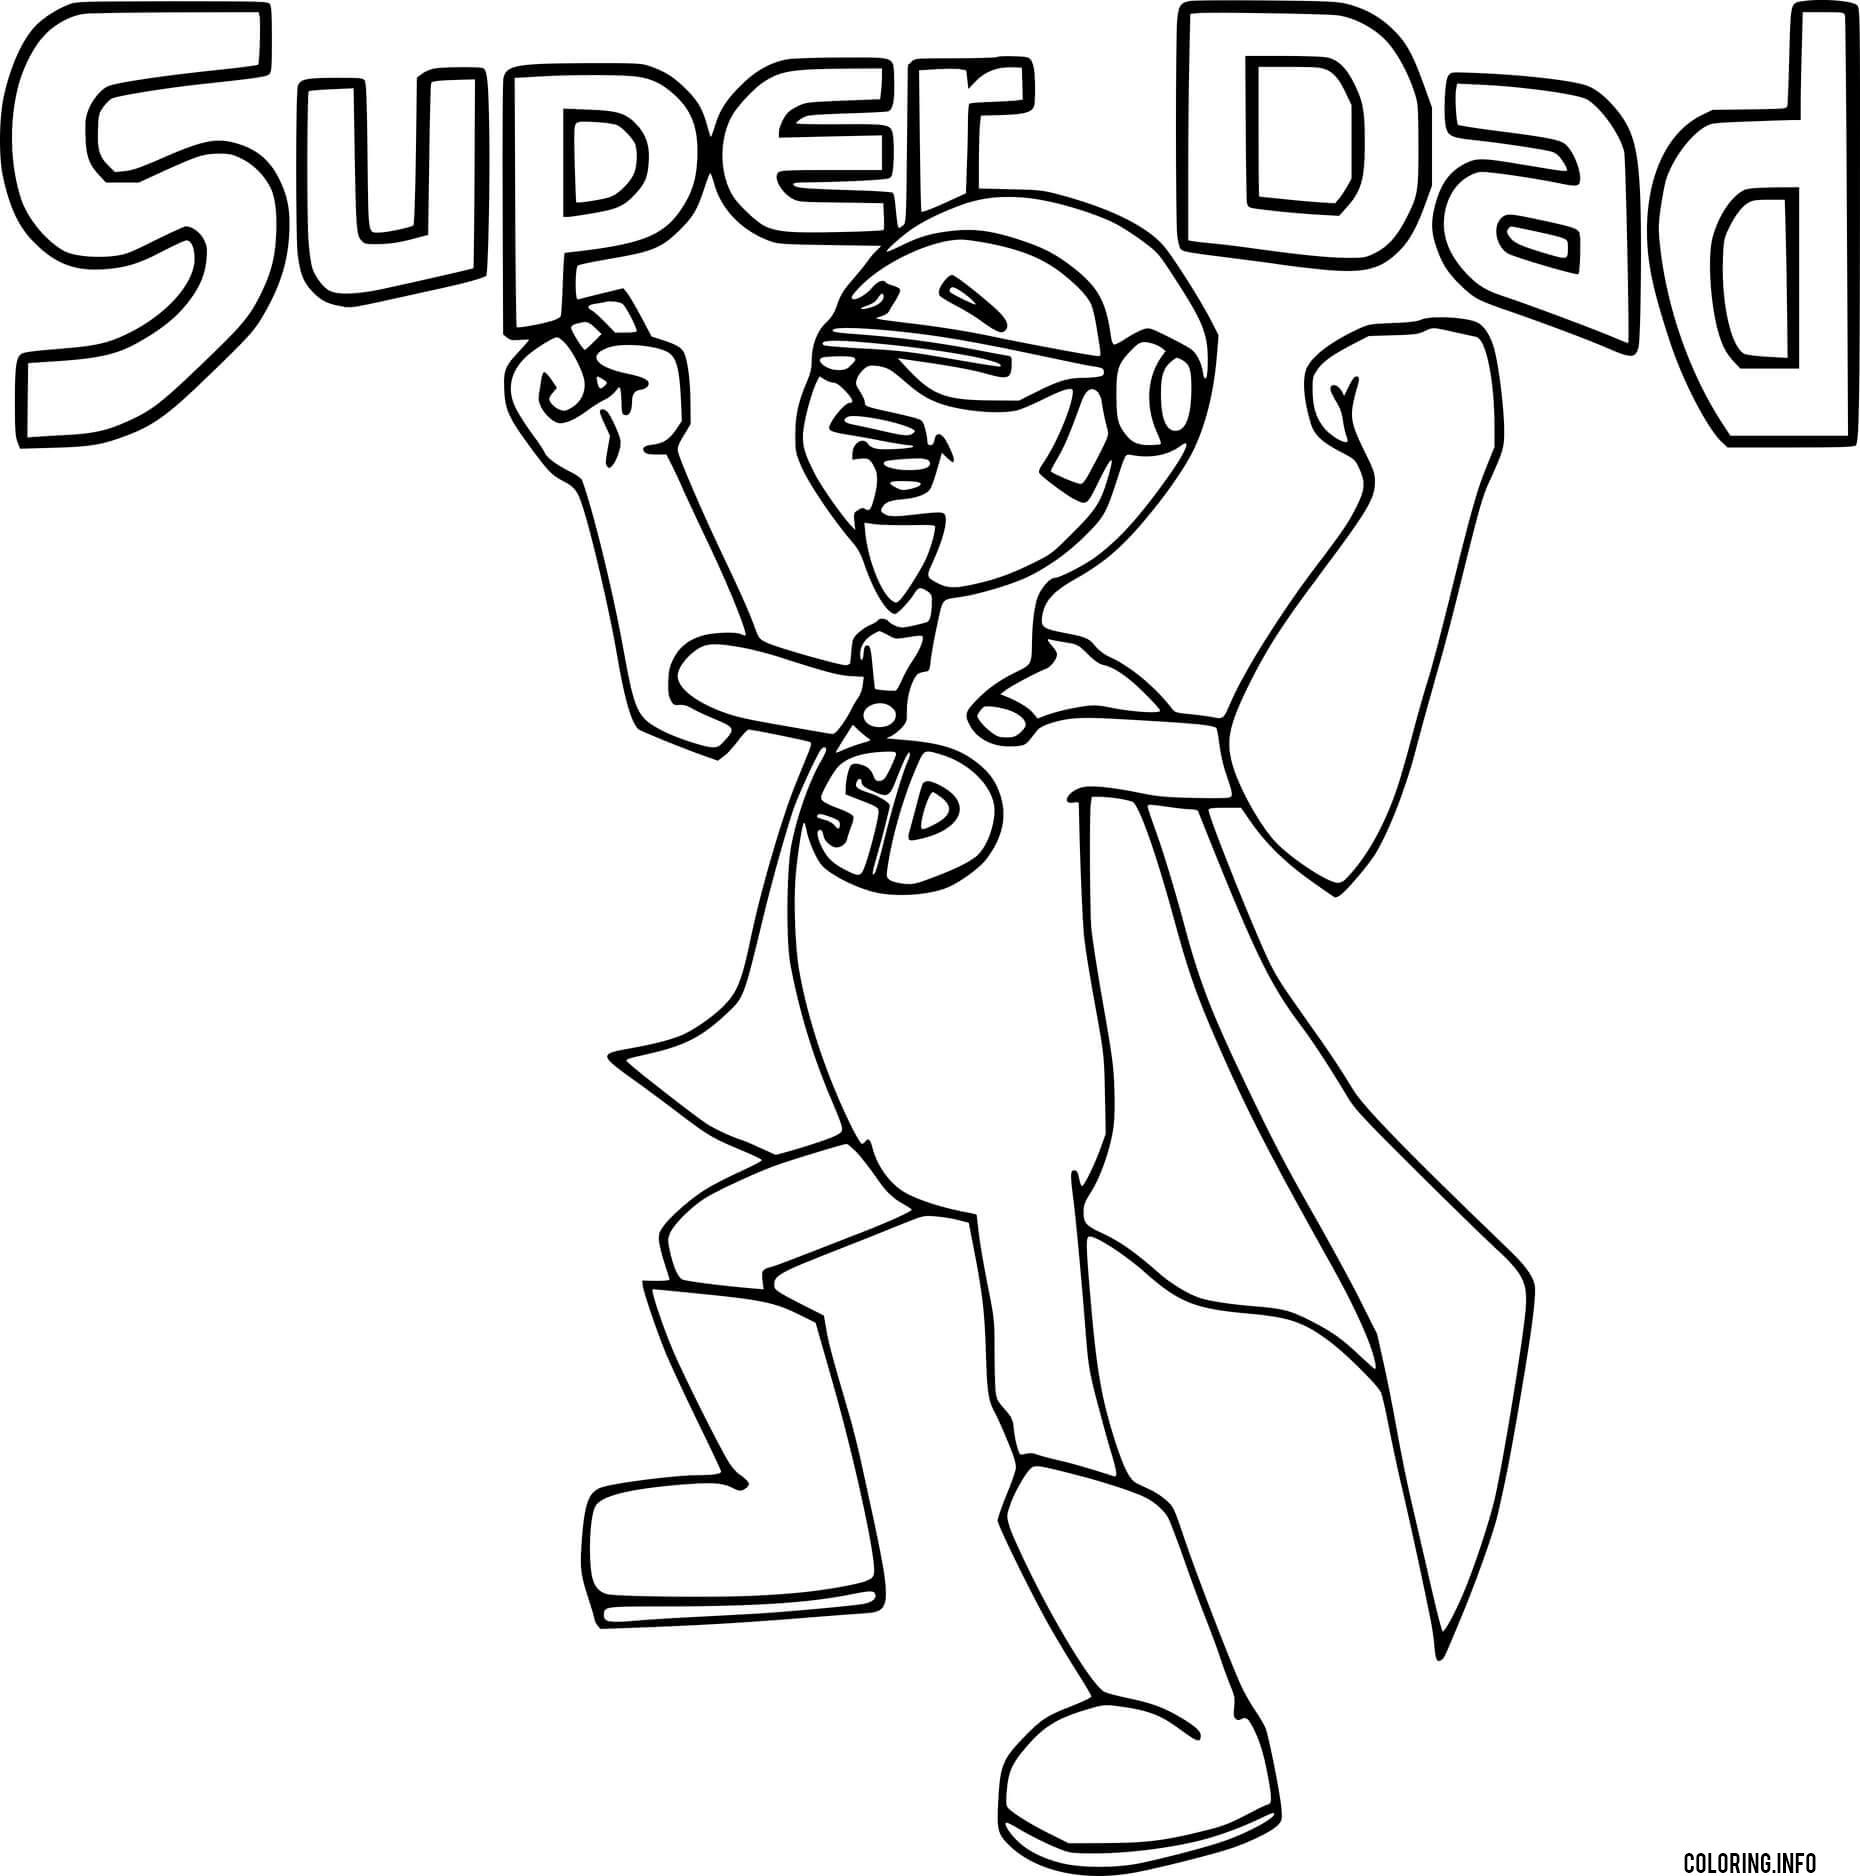 Super Dad coloring